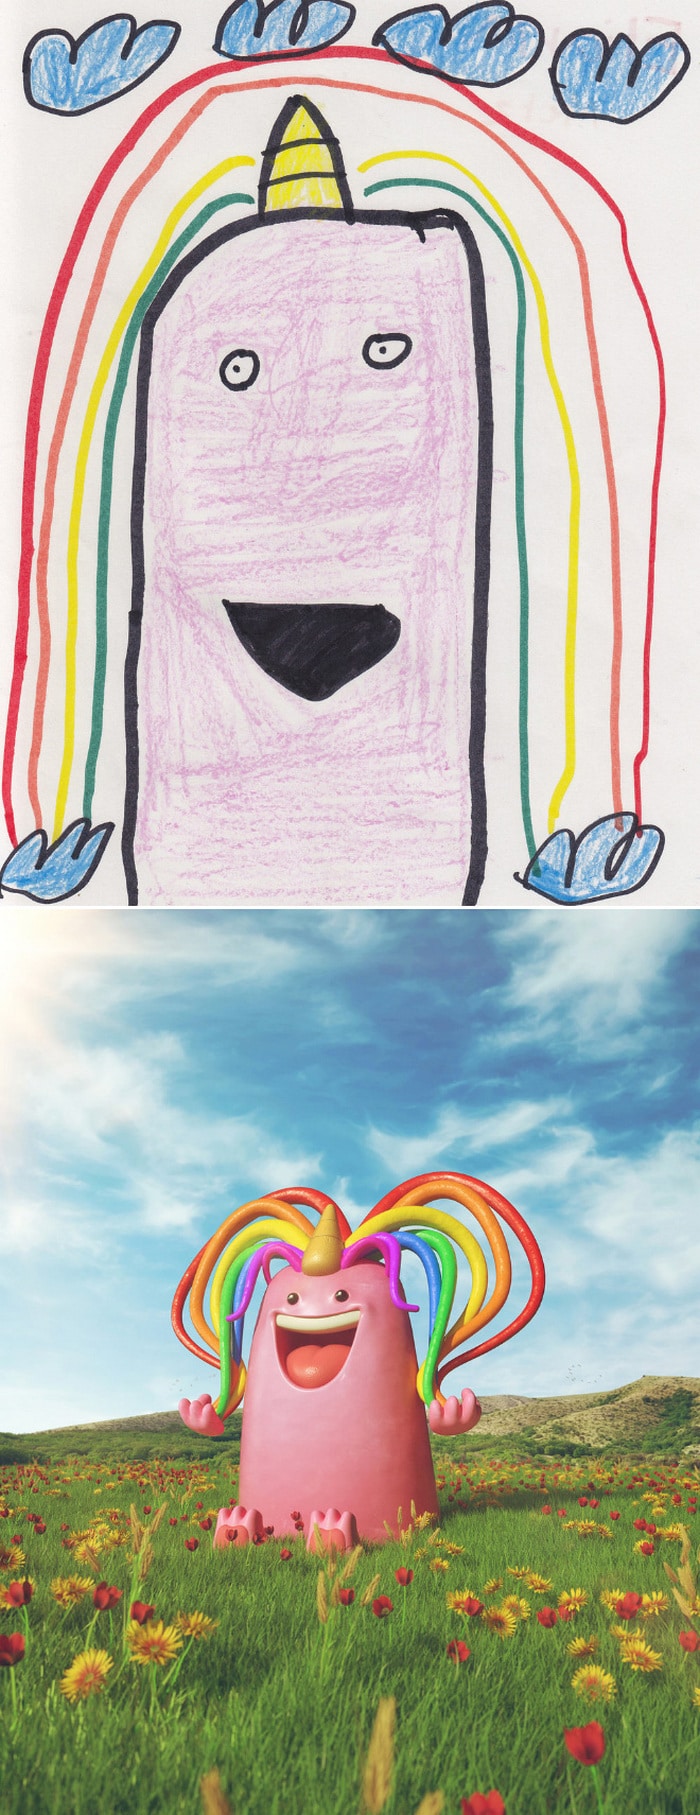 Projeto Monstro - Crianças desenham monstros e artistas recriam com sua arte 6